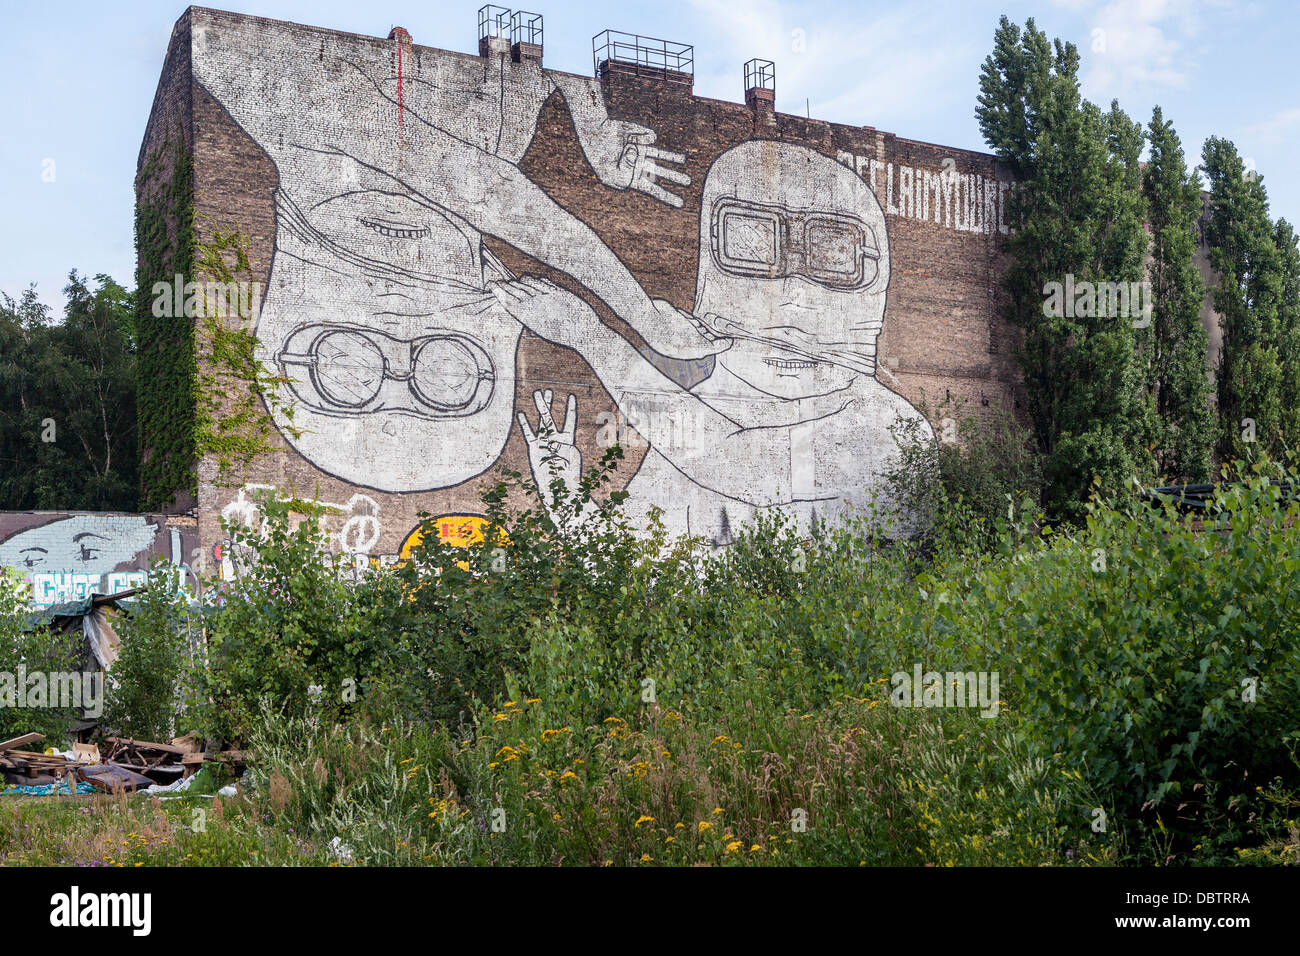 Wandgemälde von Streetart-Künstler, Blu - maskiert zwei riesige weiße Männer mit den Fingern bilden ein W und ein E - Cuvrystrasse, Kreuzberg, Berlin Stockfoto